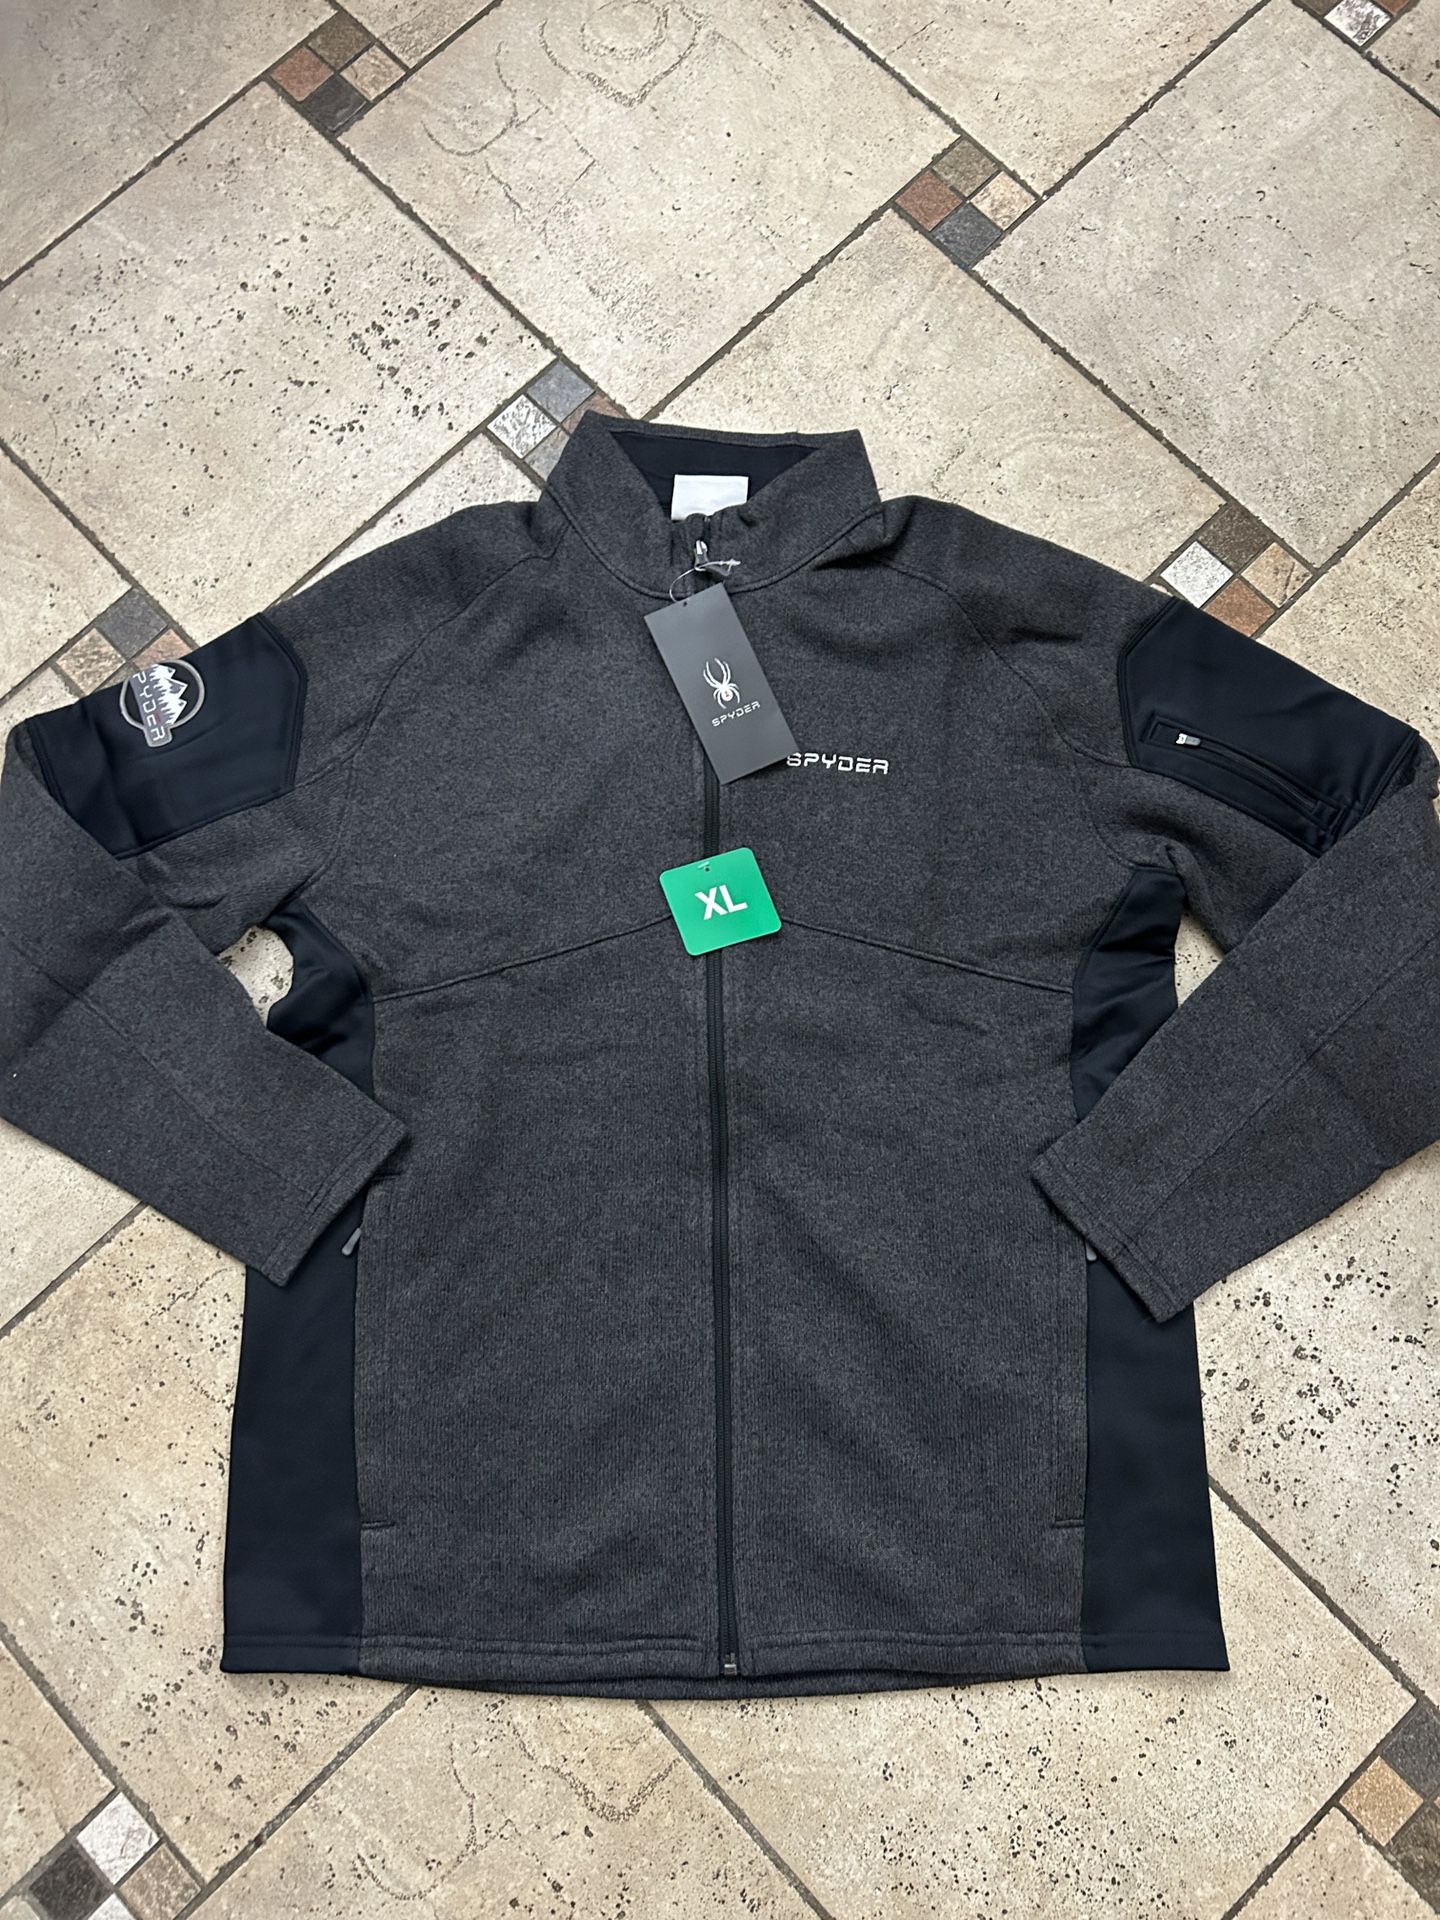 NWT Spyder men’s full zip fleece jacket size XL Black